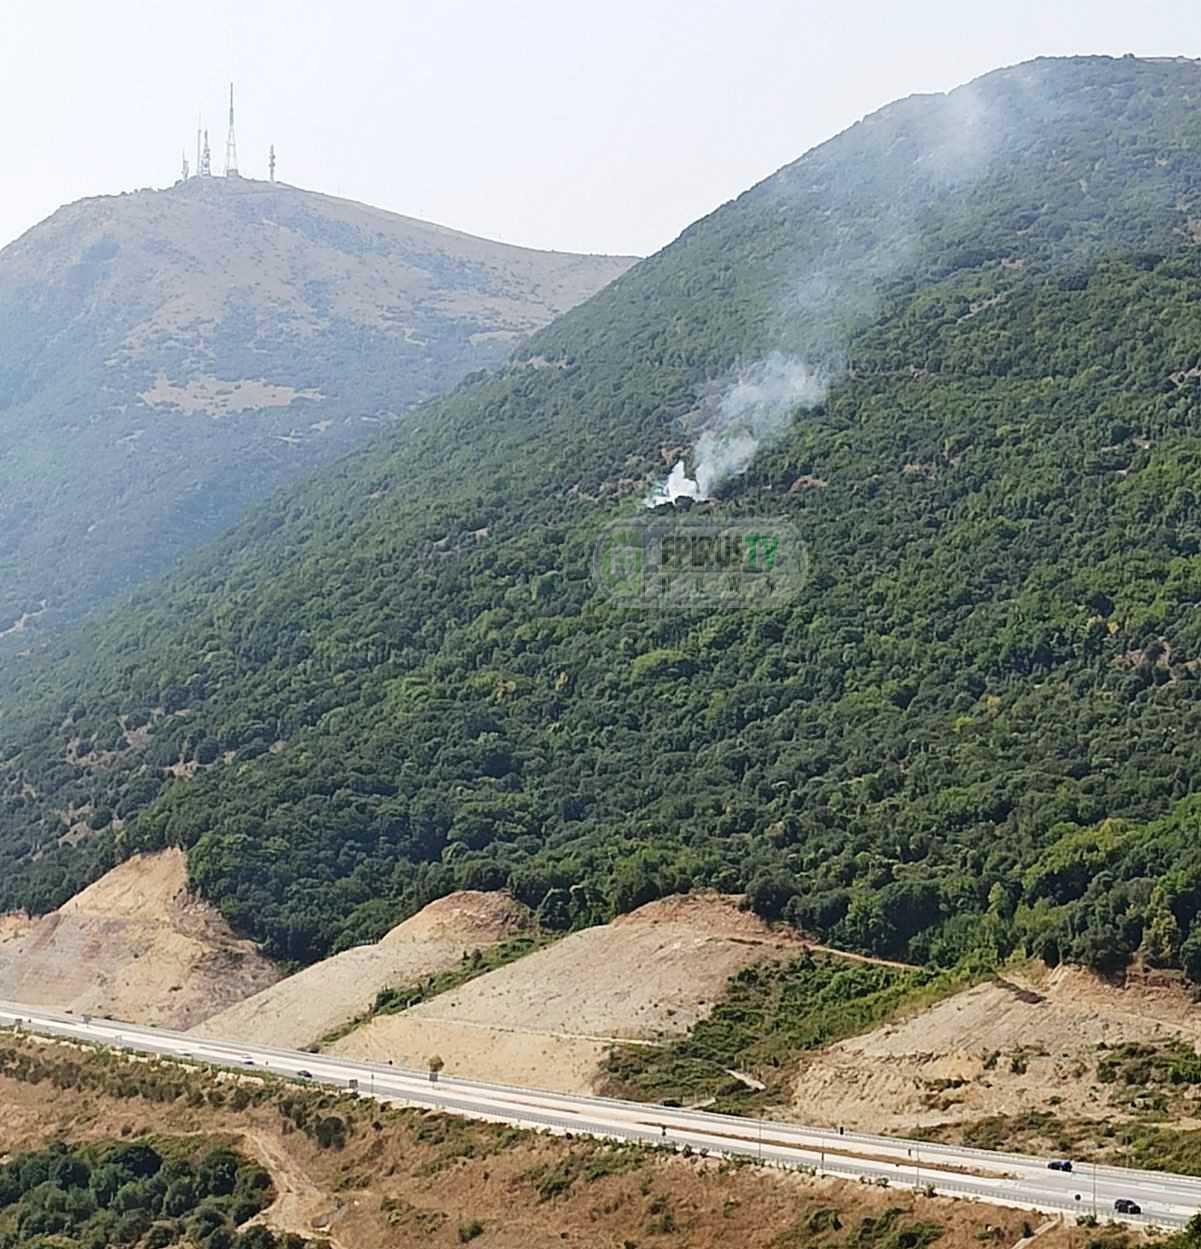 Πυρκαγιά σε δασική έκταση στην περιοχή Αμπελιά Ιωαννινων (Φώτο)